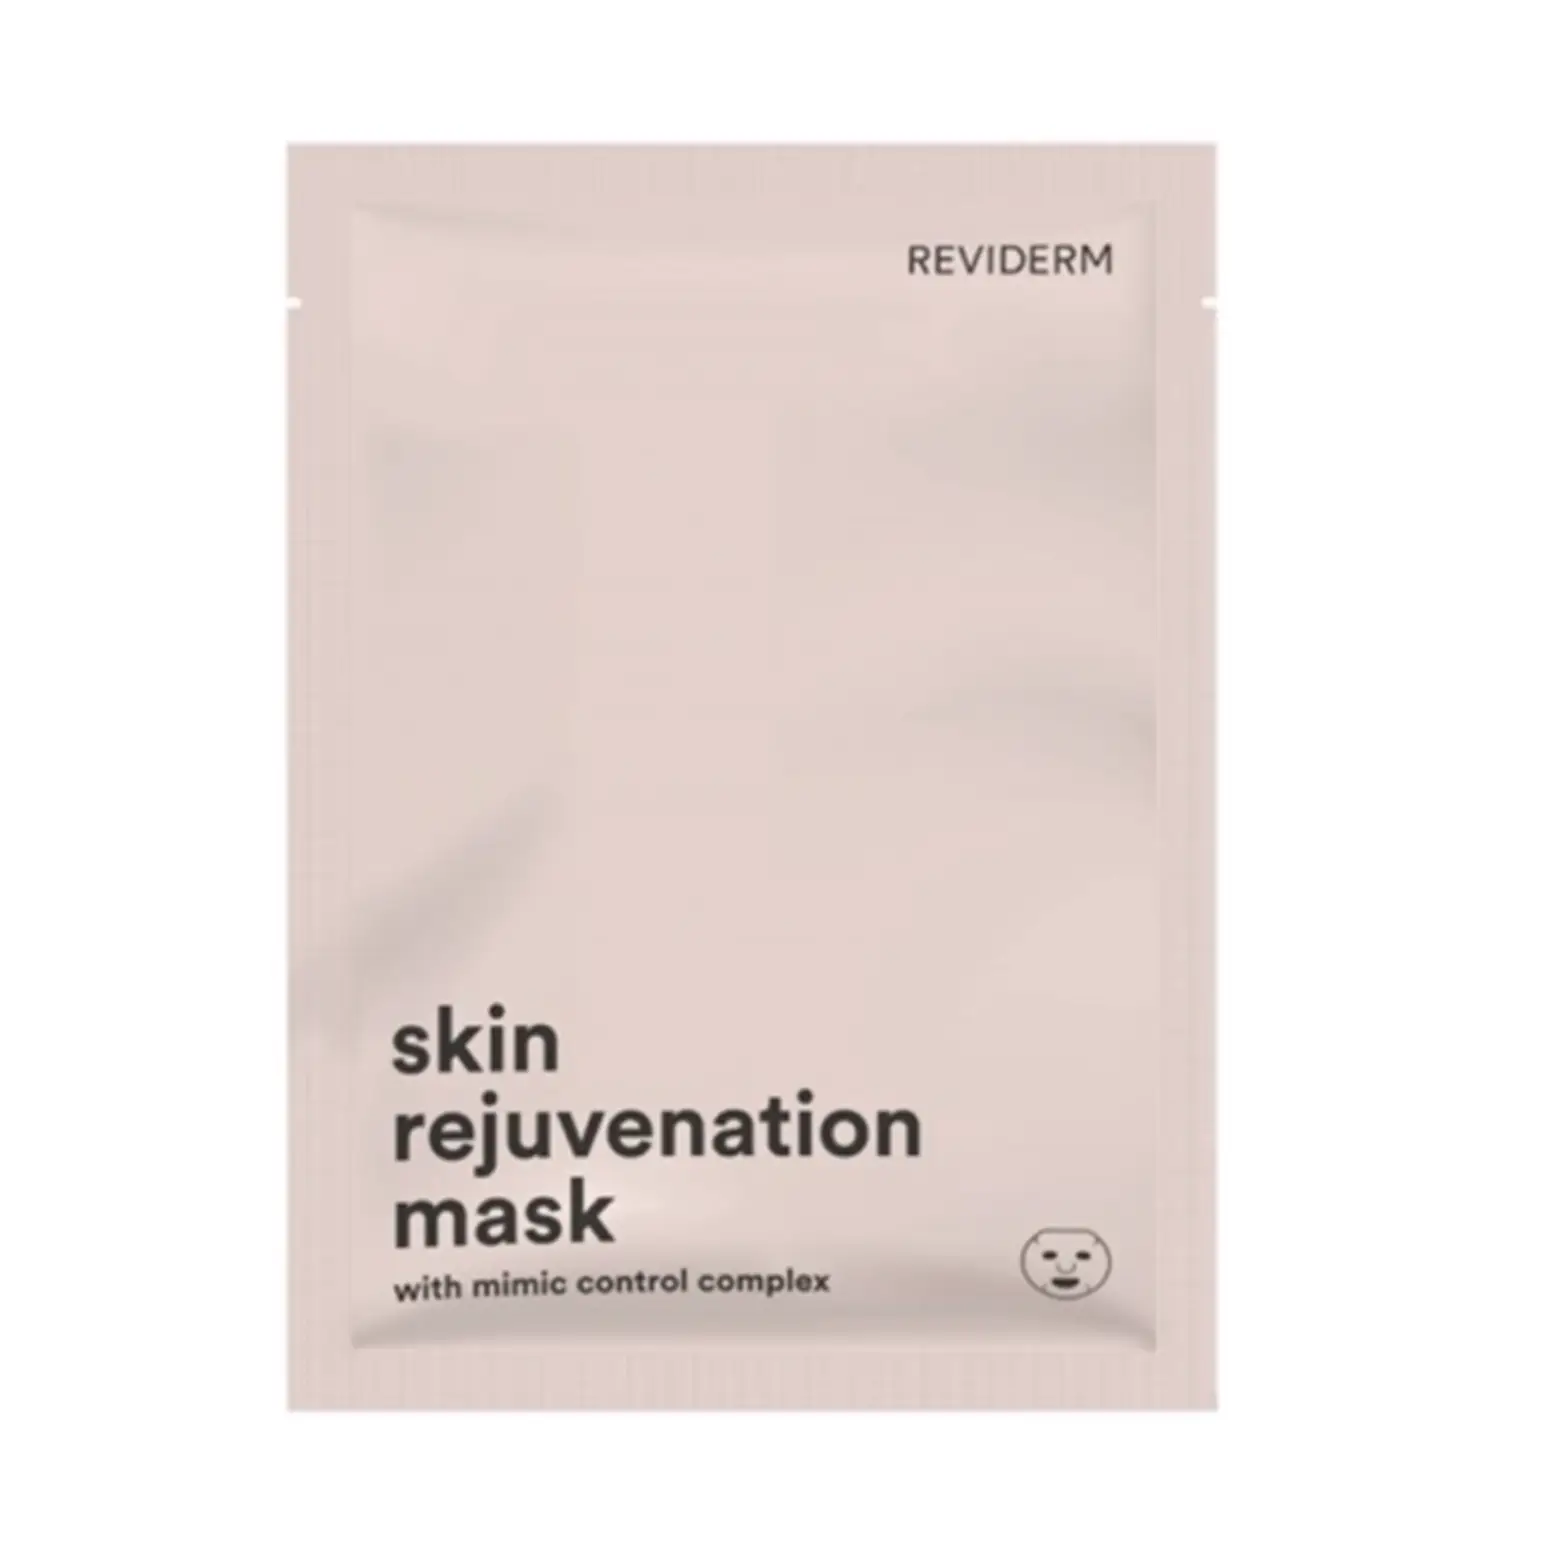 Reviderm Skin Rejuvenation Mask gezichtsmasker